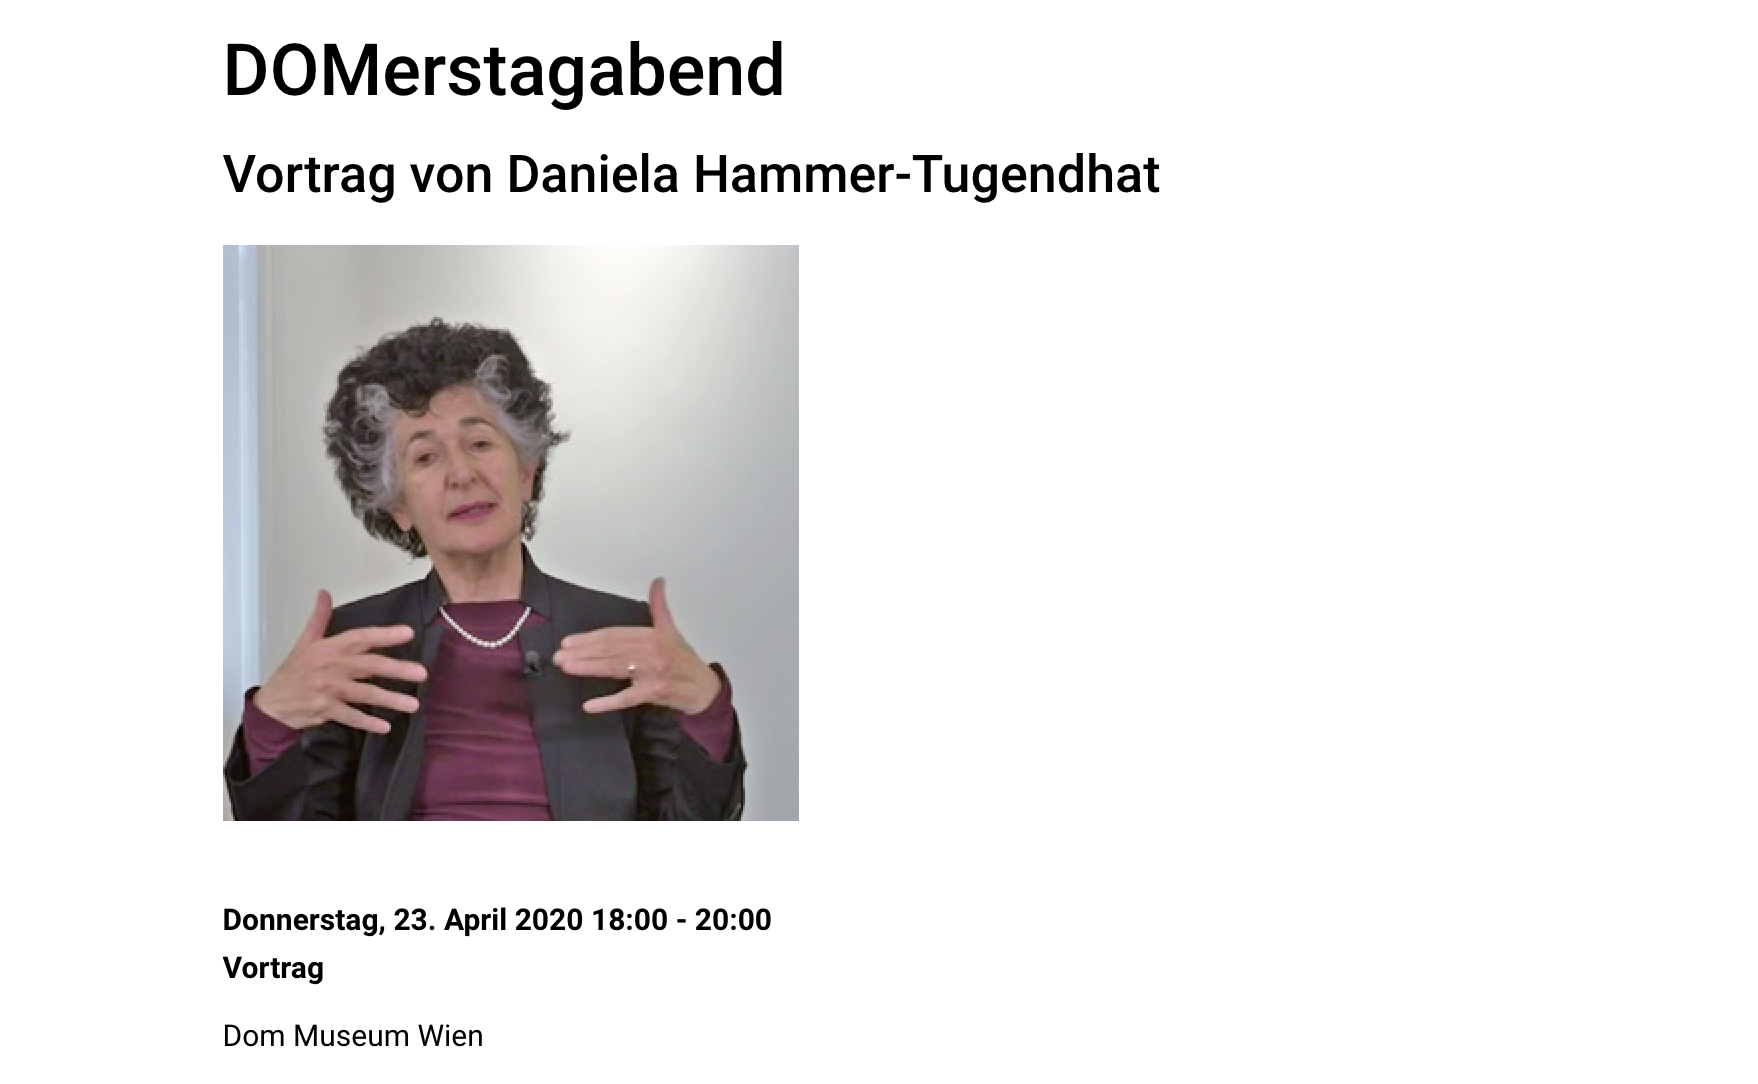 DO Merstagabend Vortrag von Daniela Hammer Tugendhat